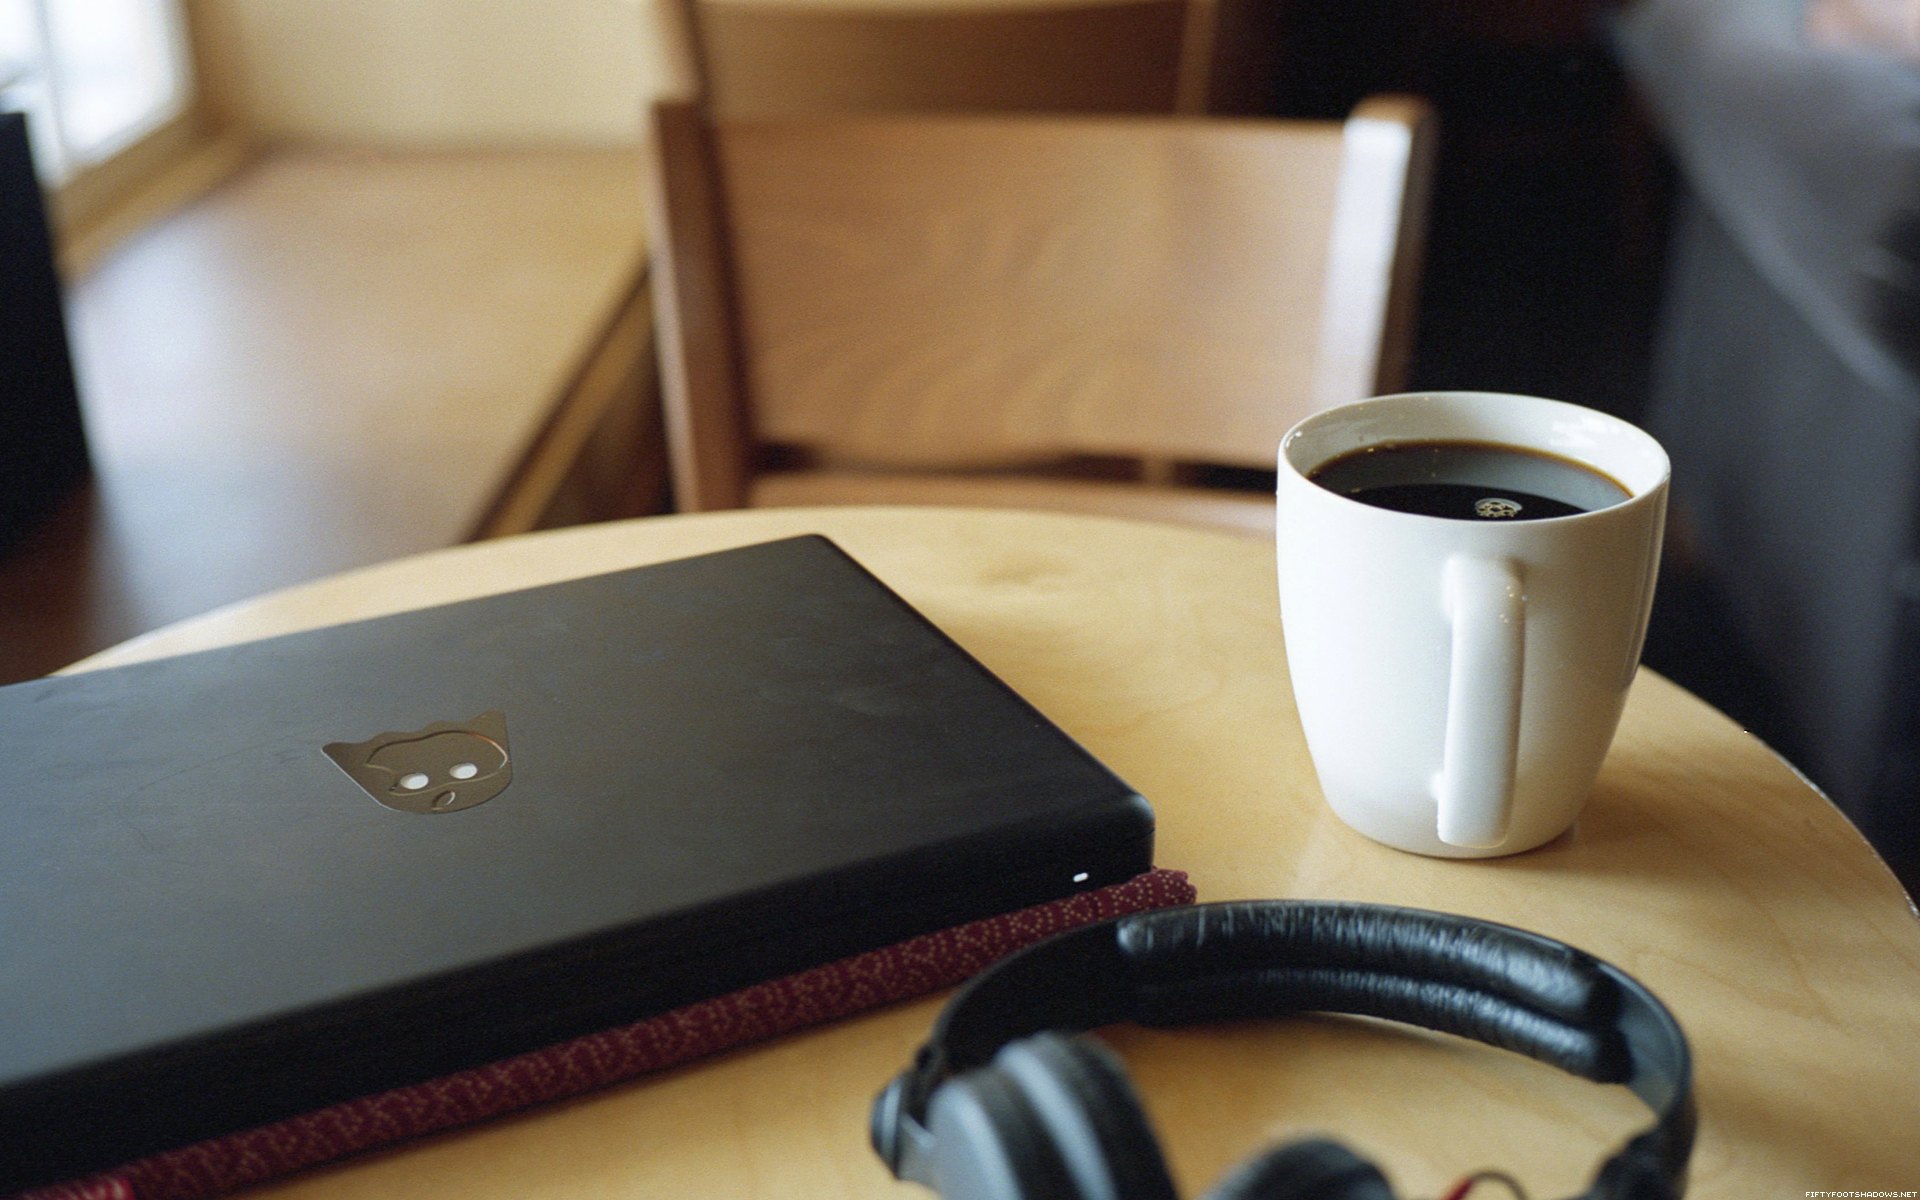 Включи утренний звук. Наушники для ноутбука. Чашка кофе и наушники. Ноут с наушниками и кофе. Телефон и наушники на столе.